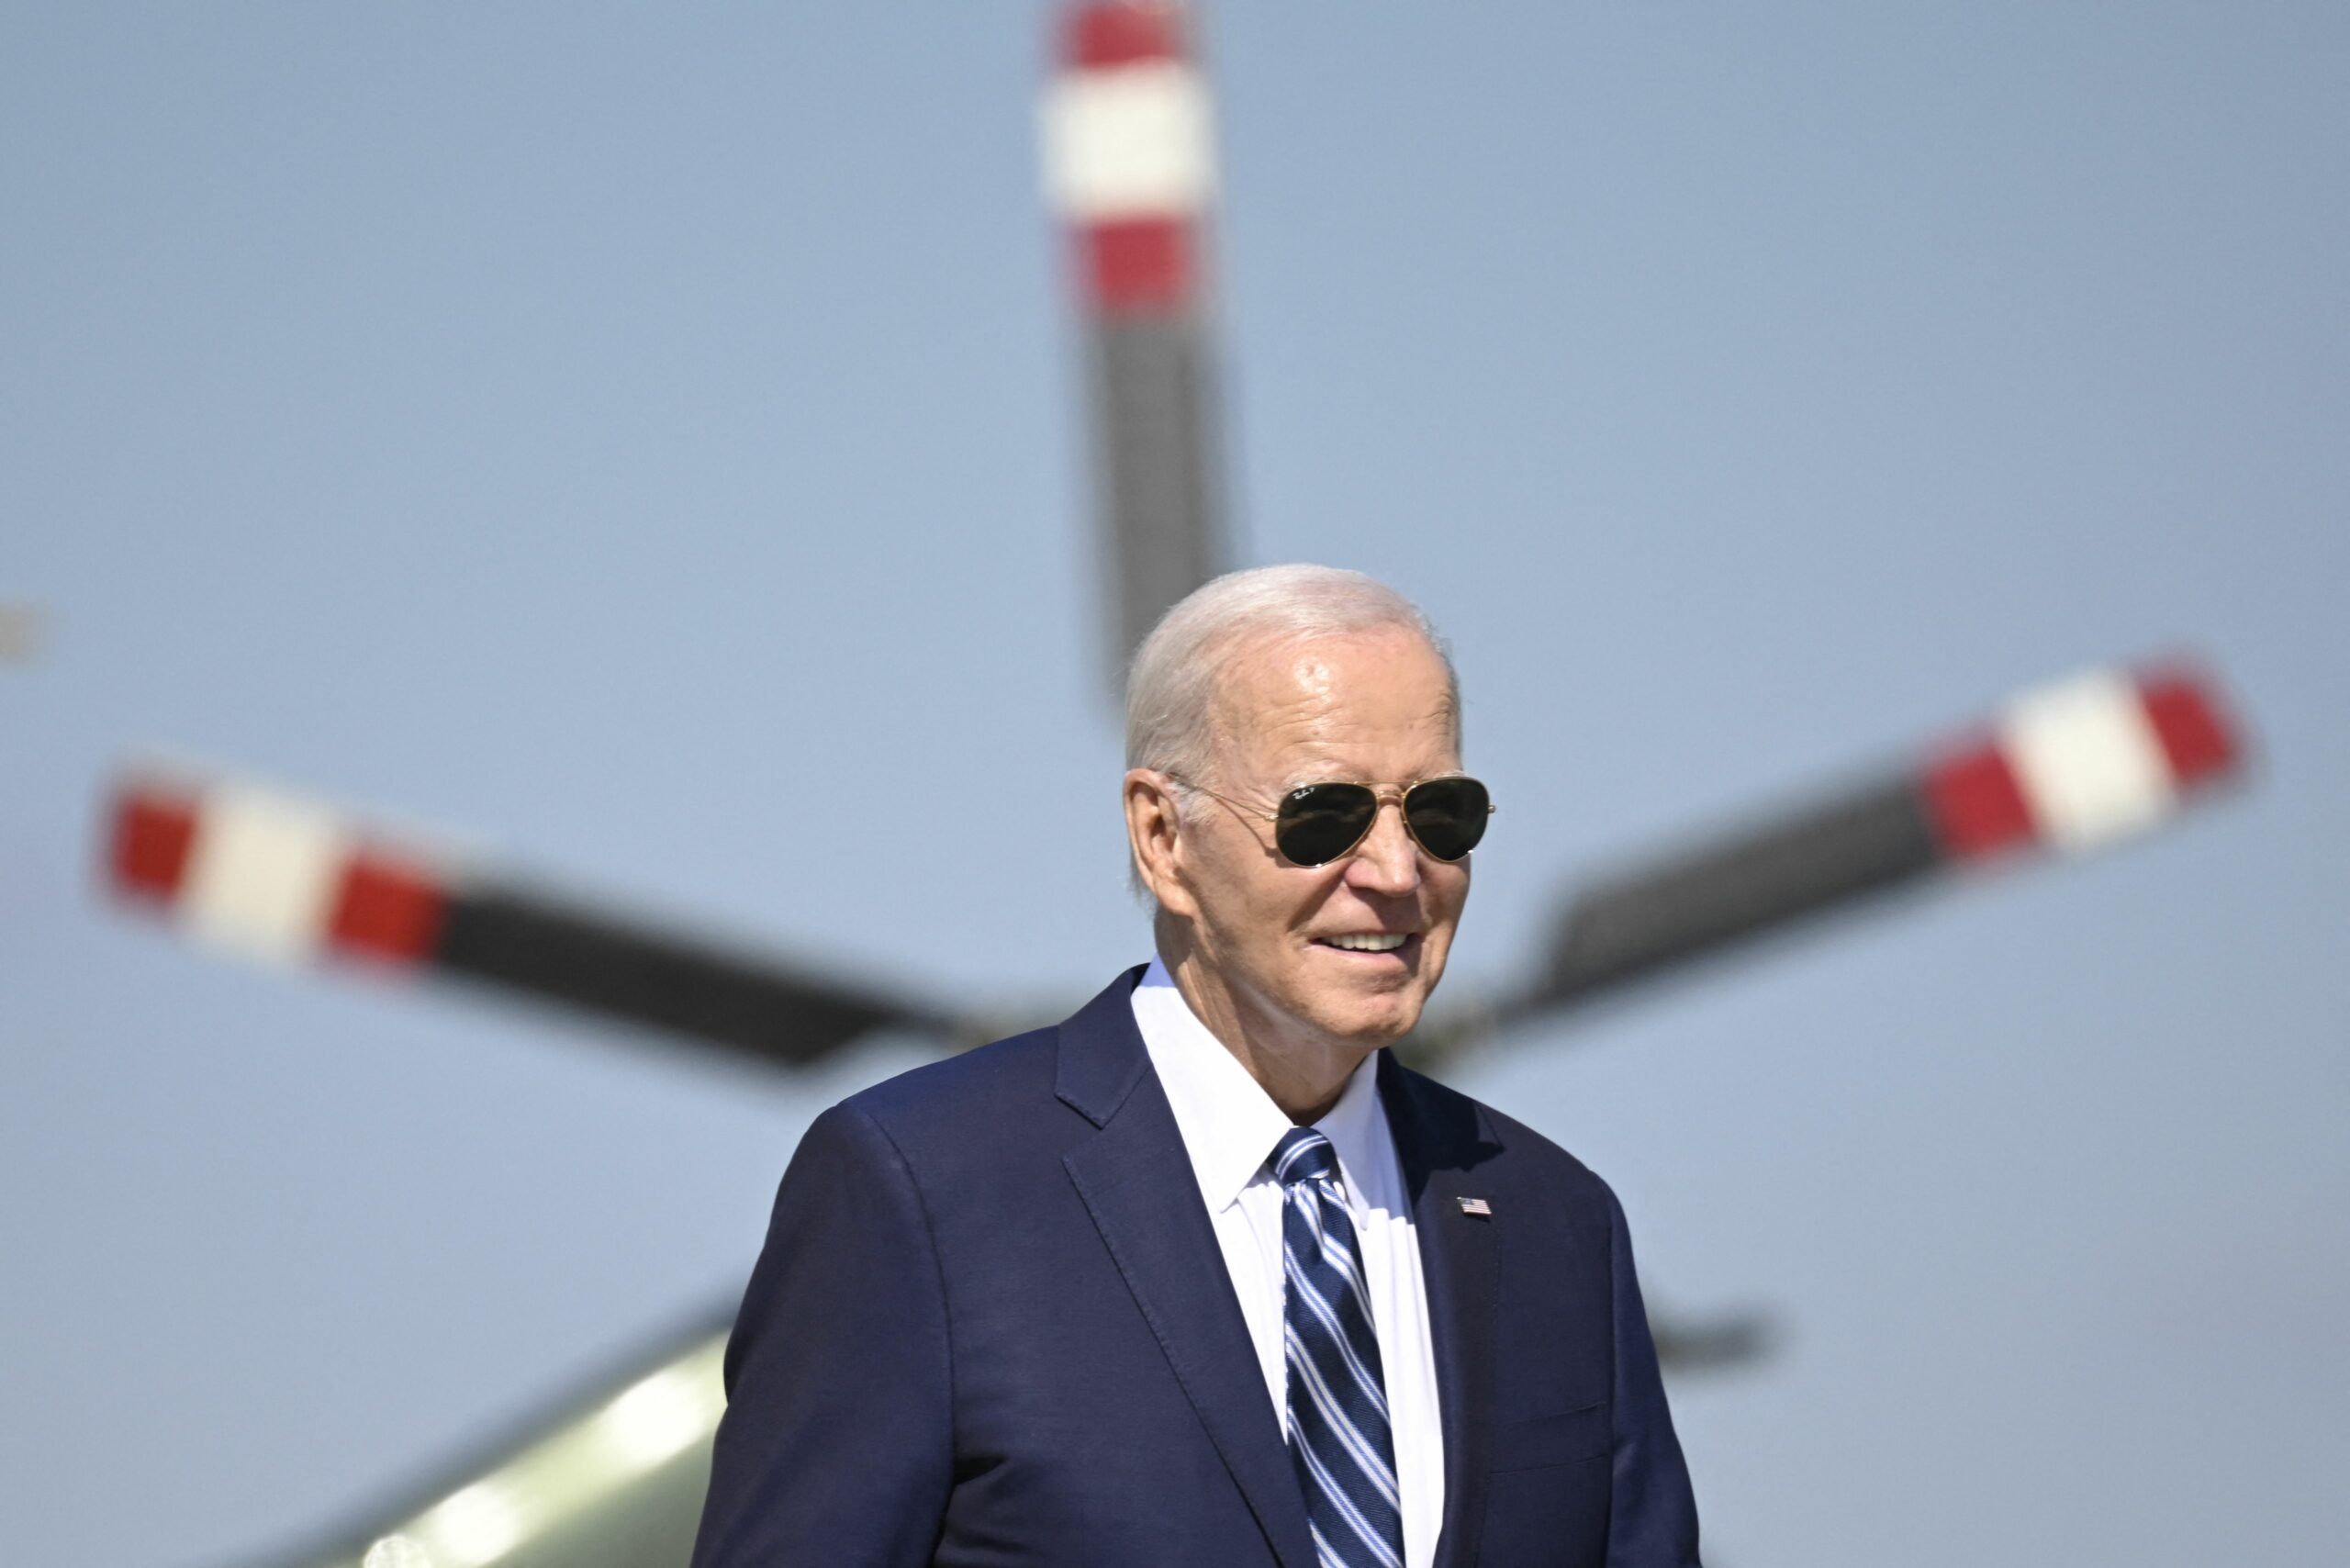 Biden to visit Miami for campaign fundraiser